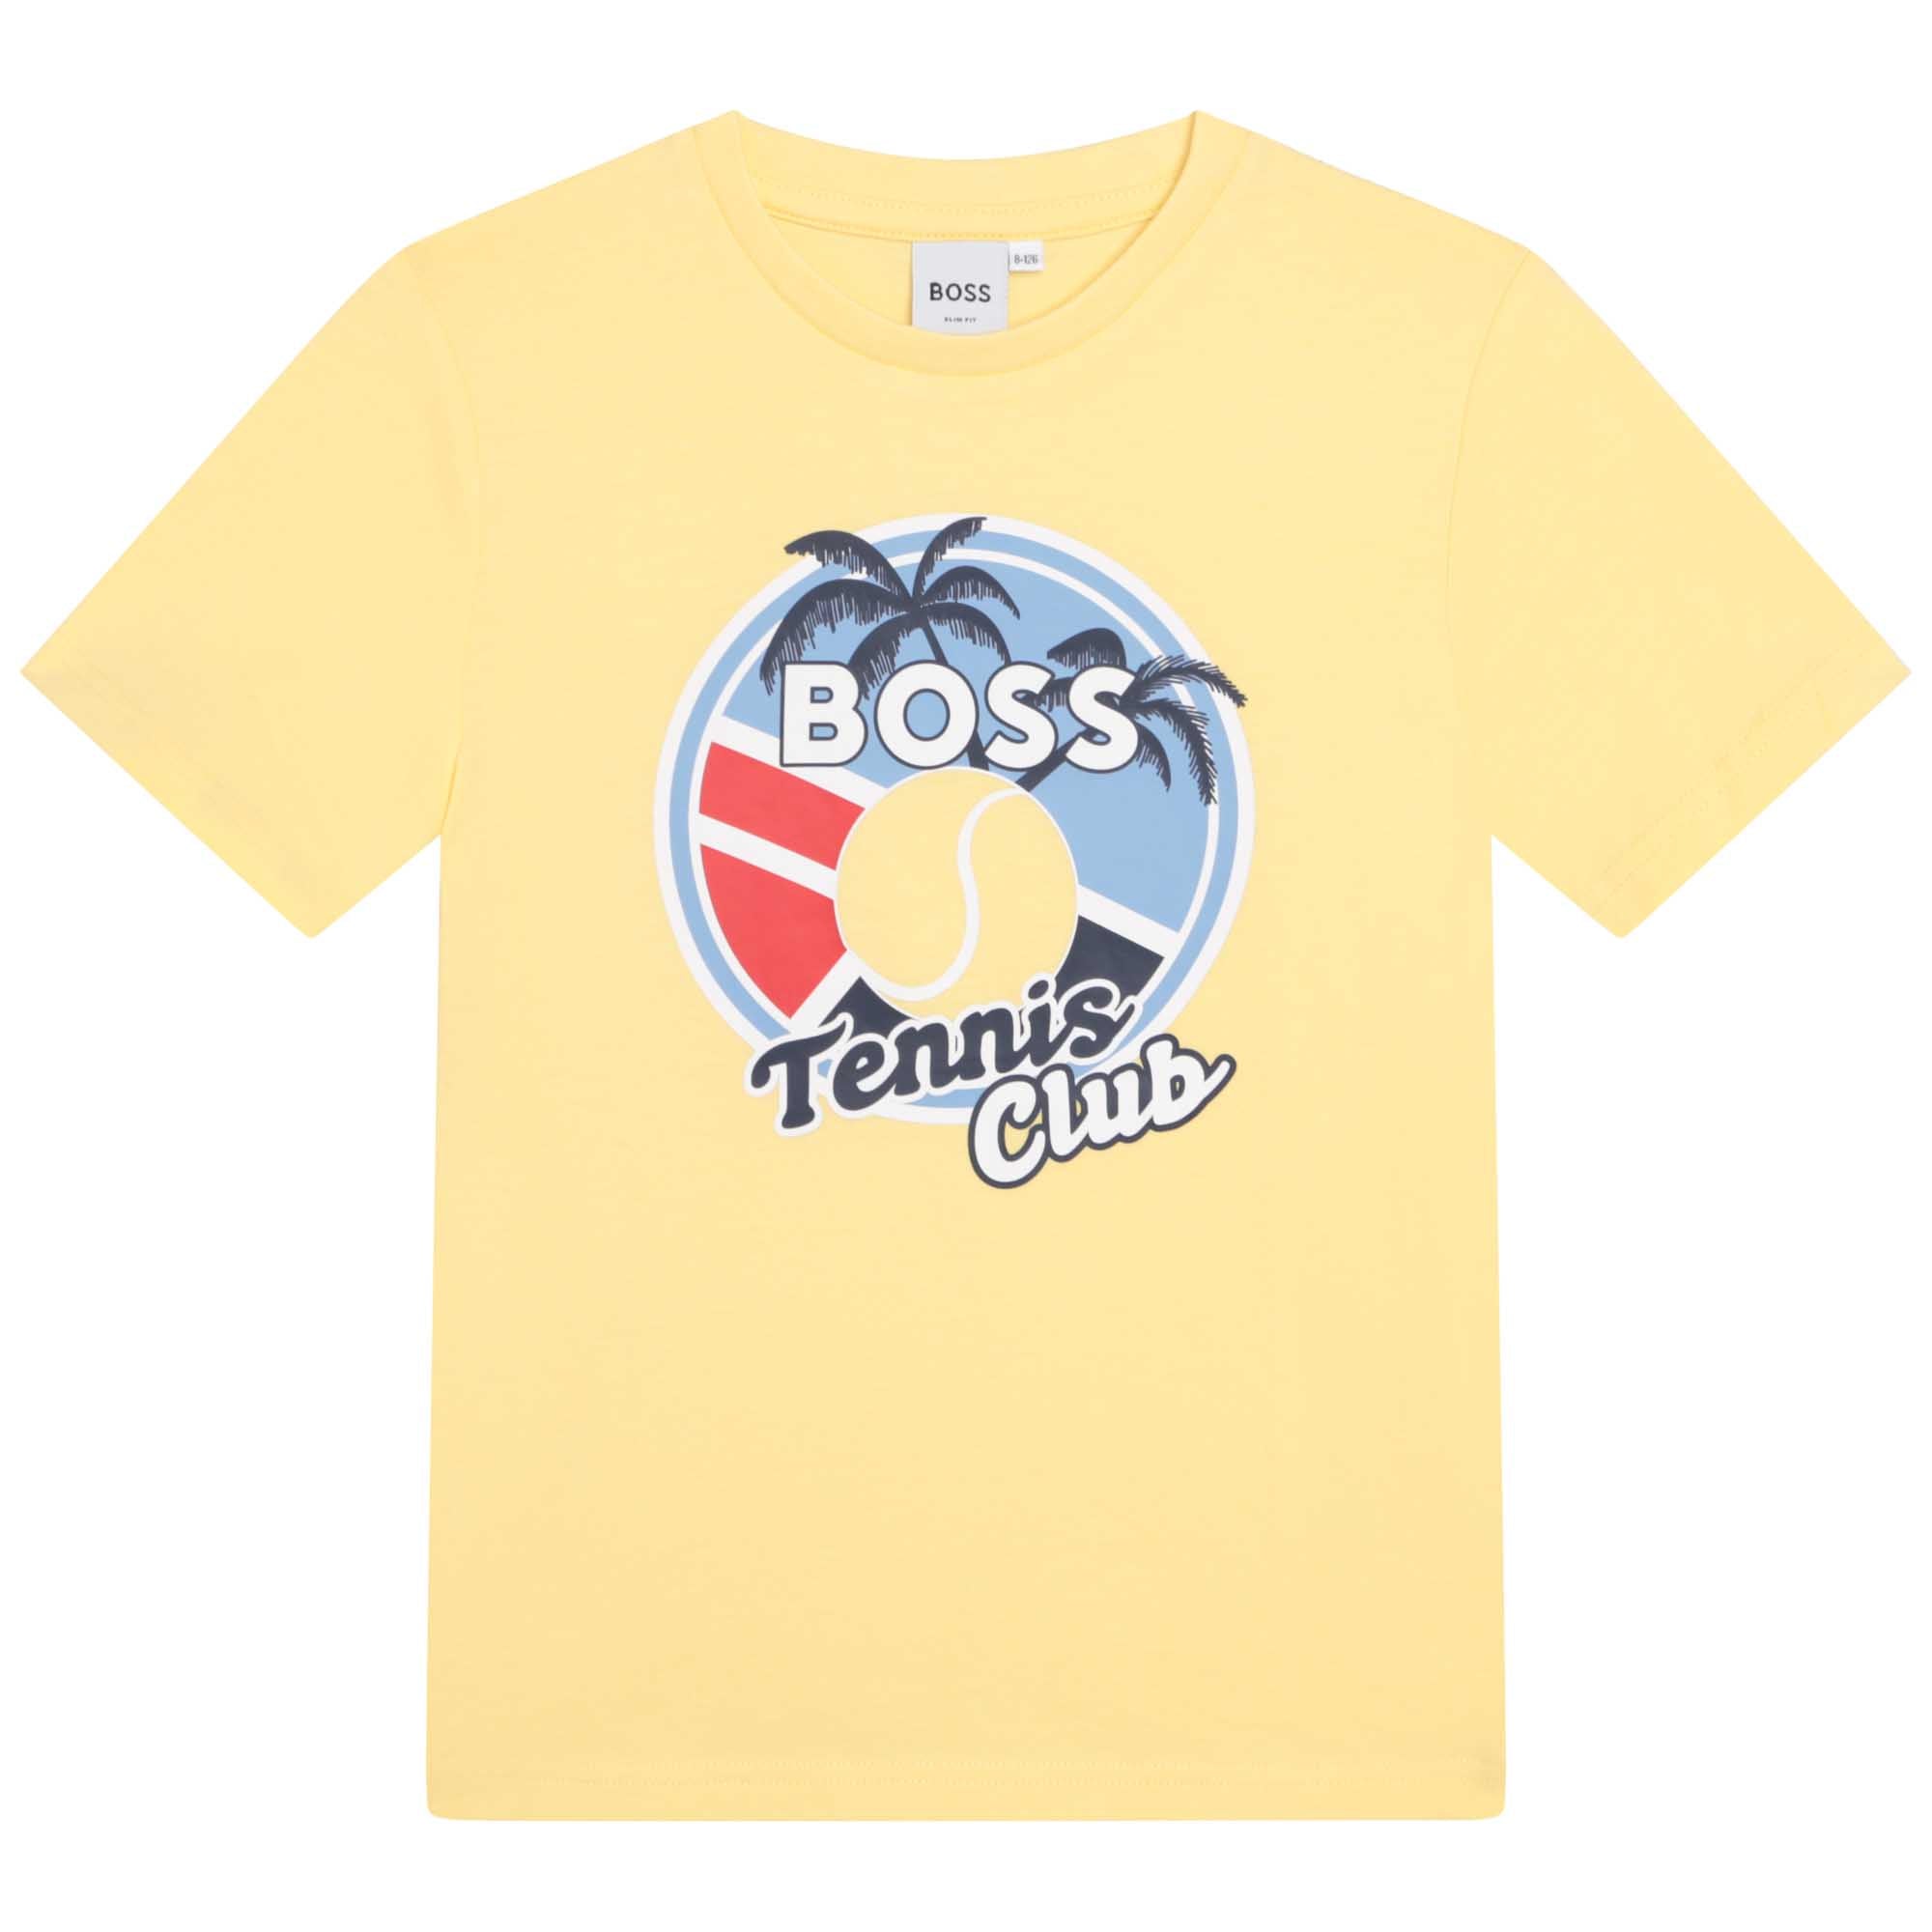 Hugo Boss Tennis Club T-Shirt